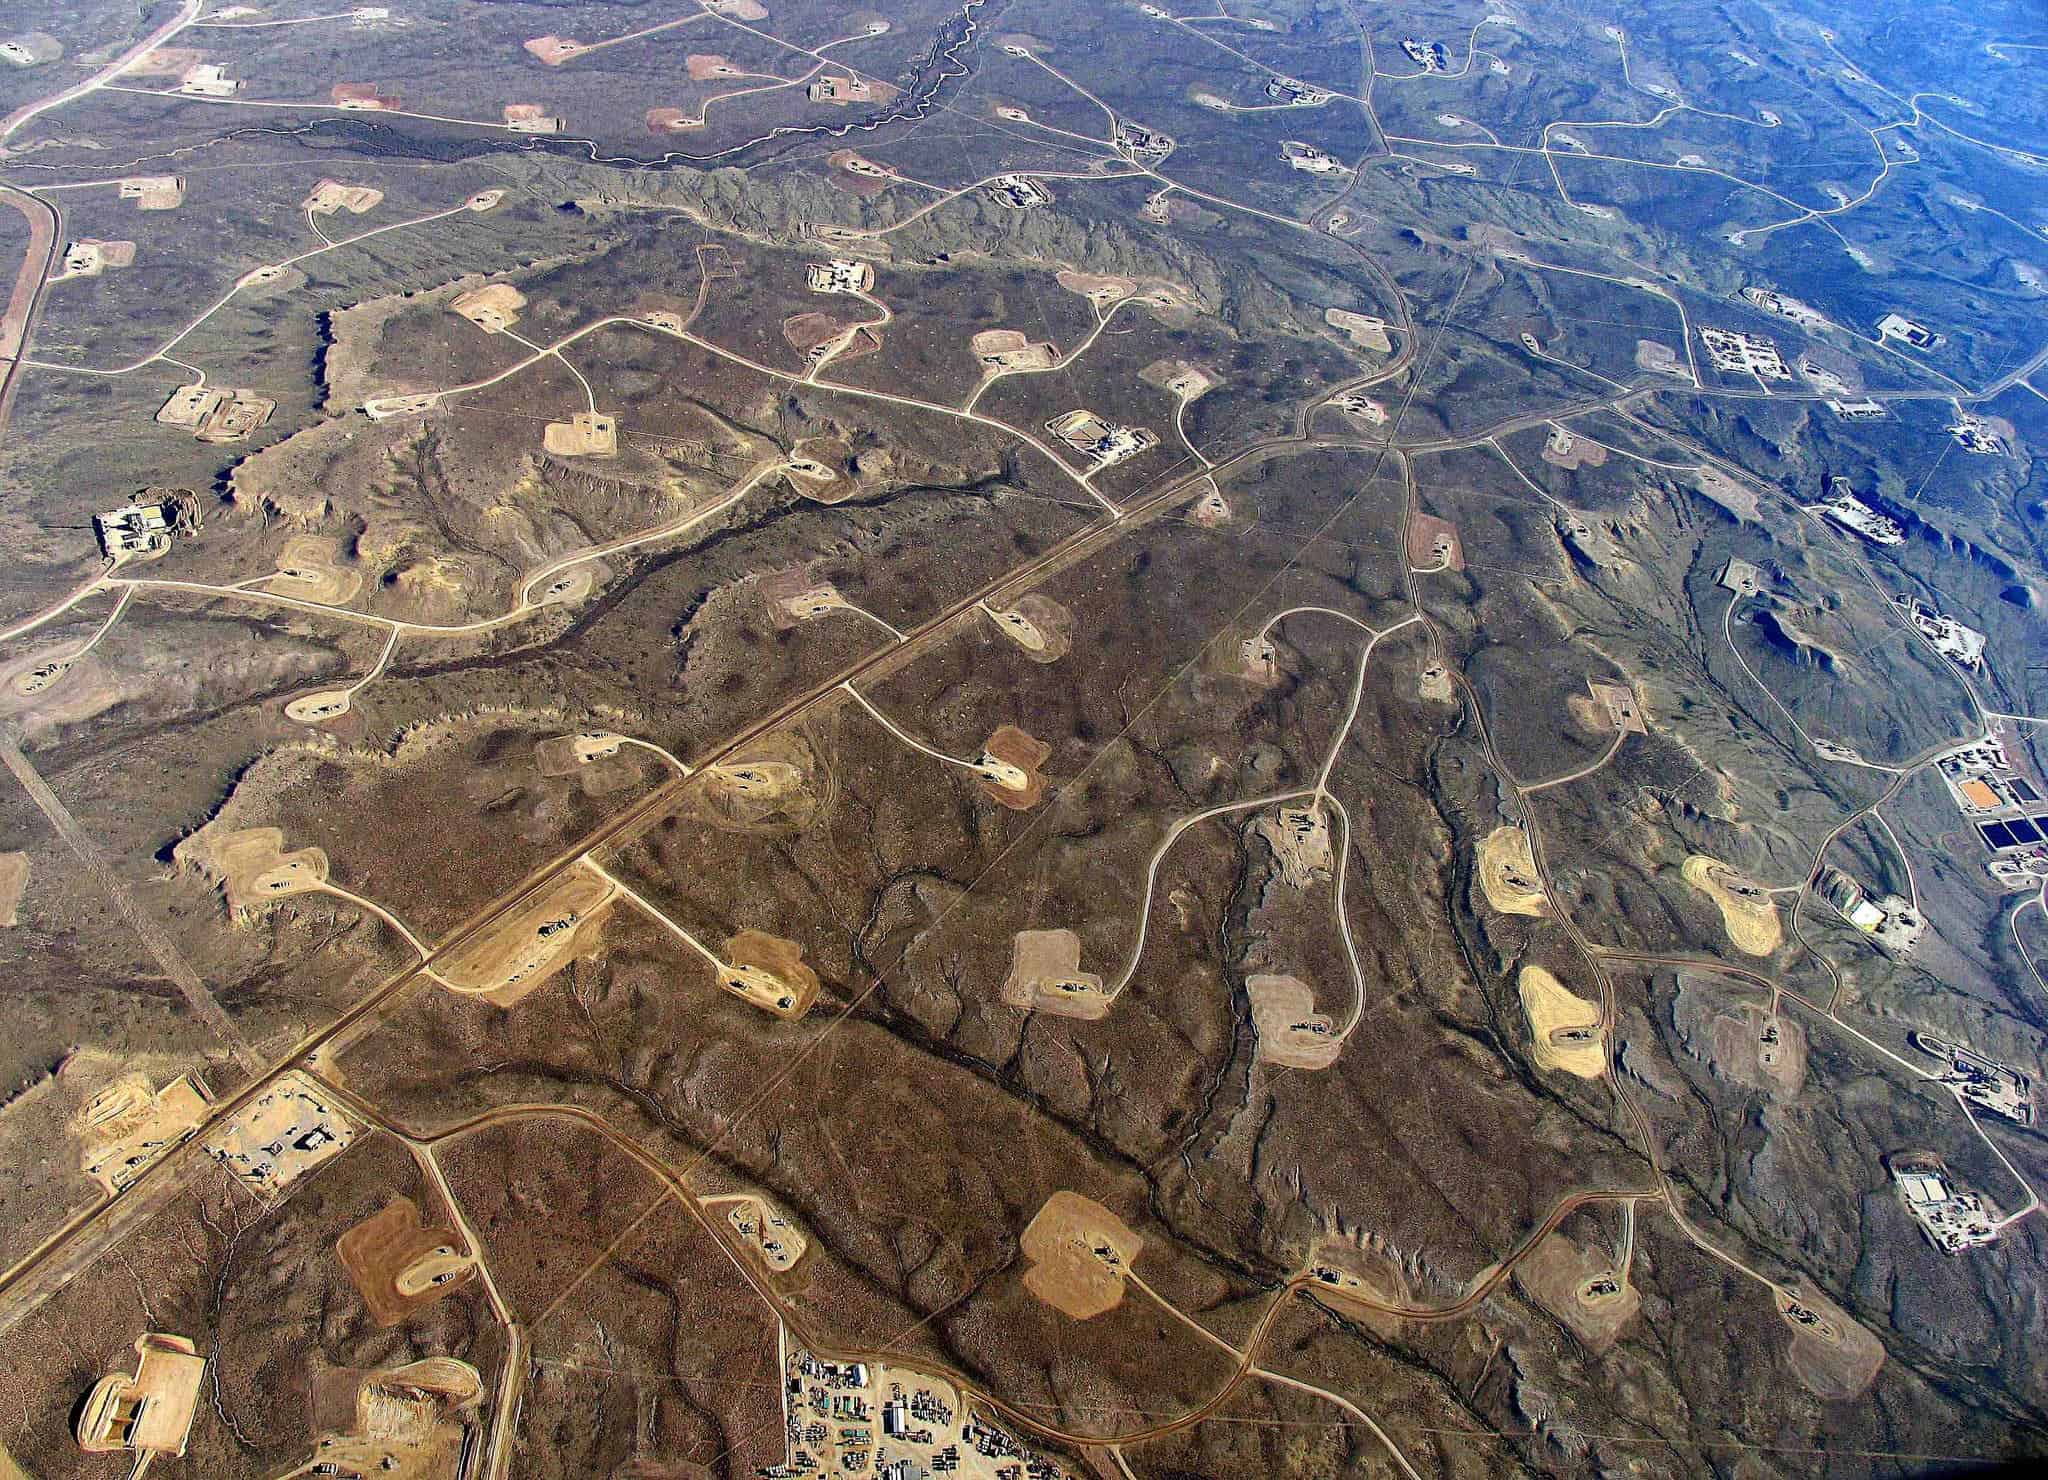 Fracking landscape. Image credits: Simon Fraser University.